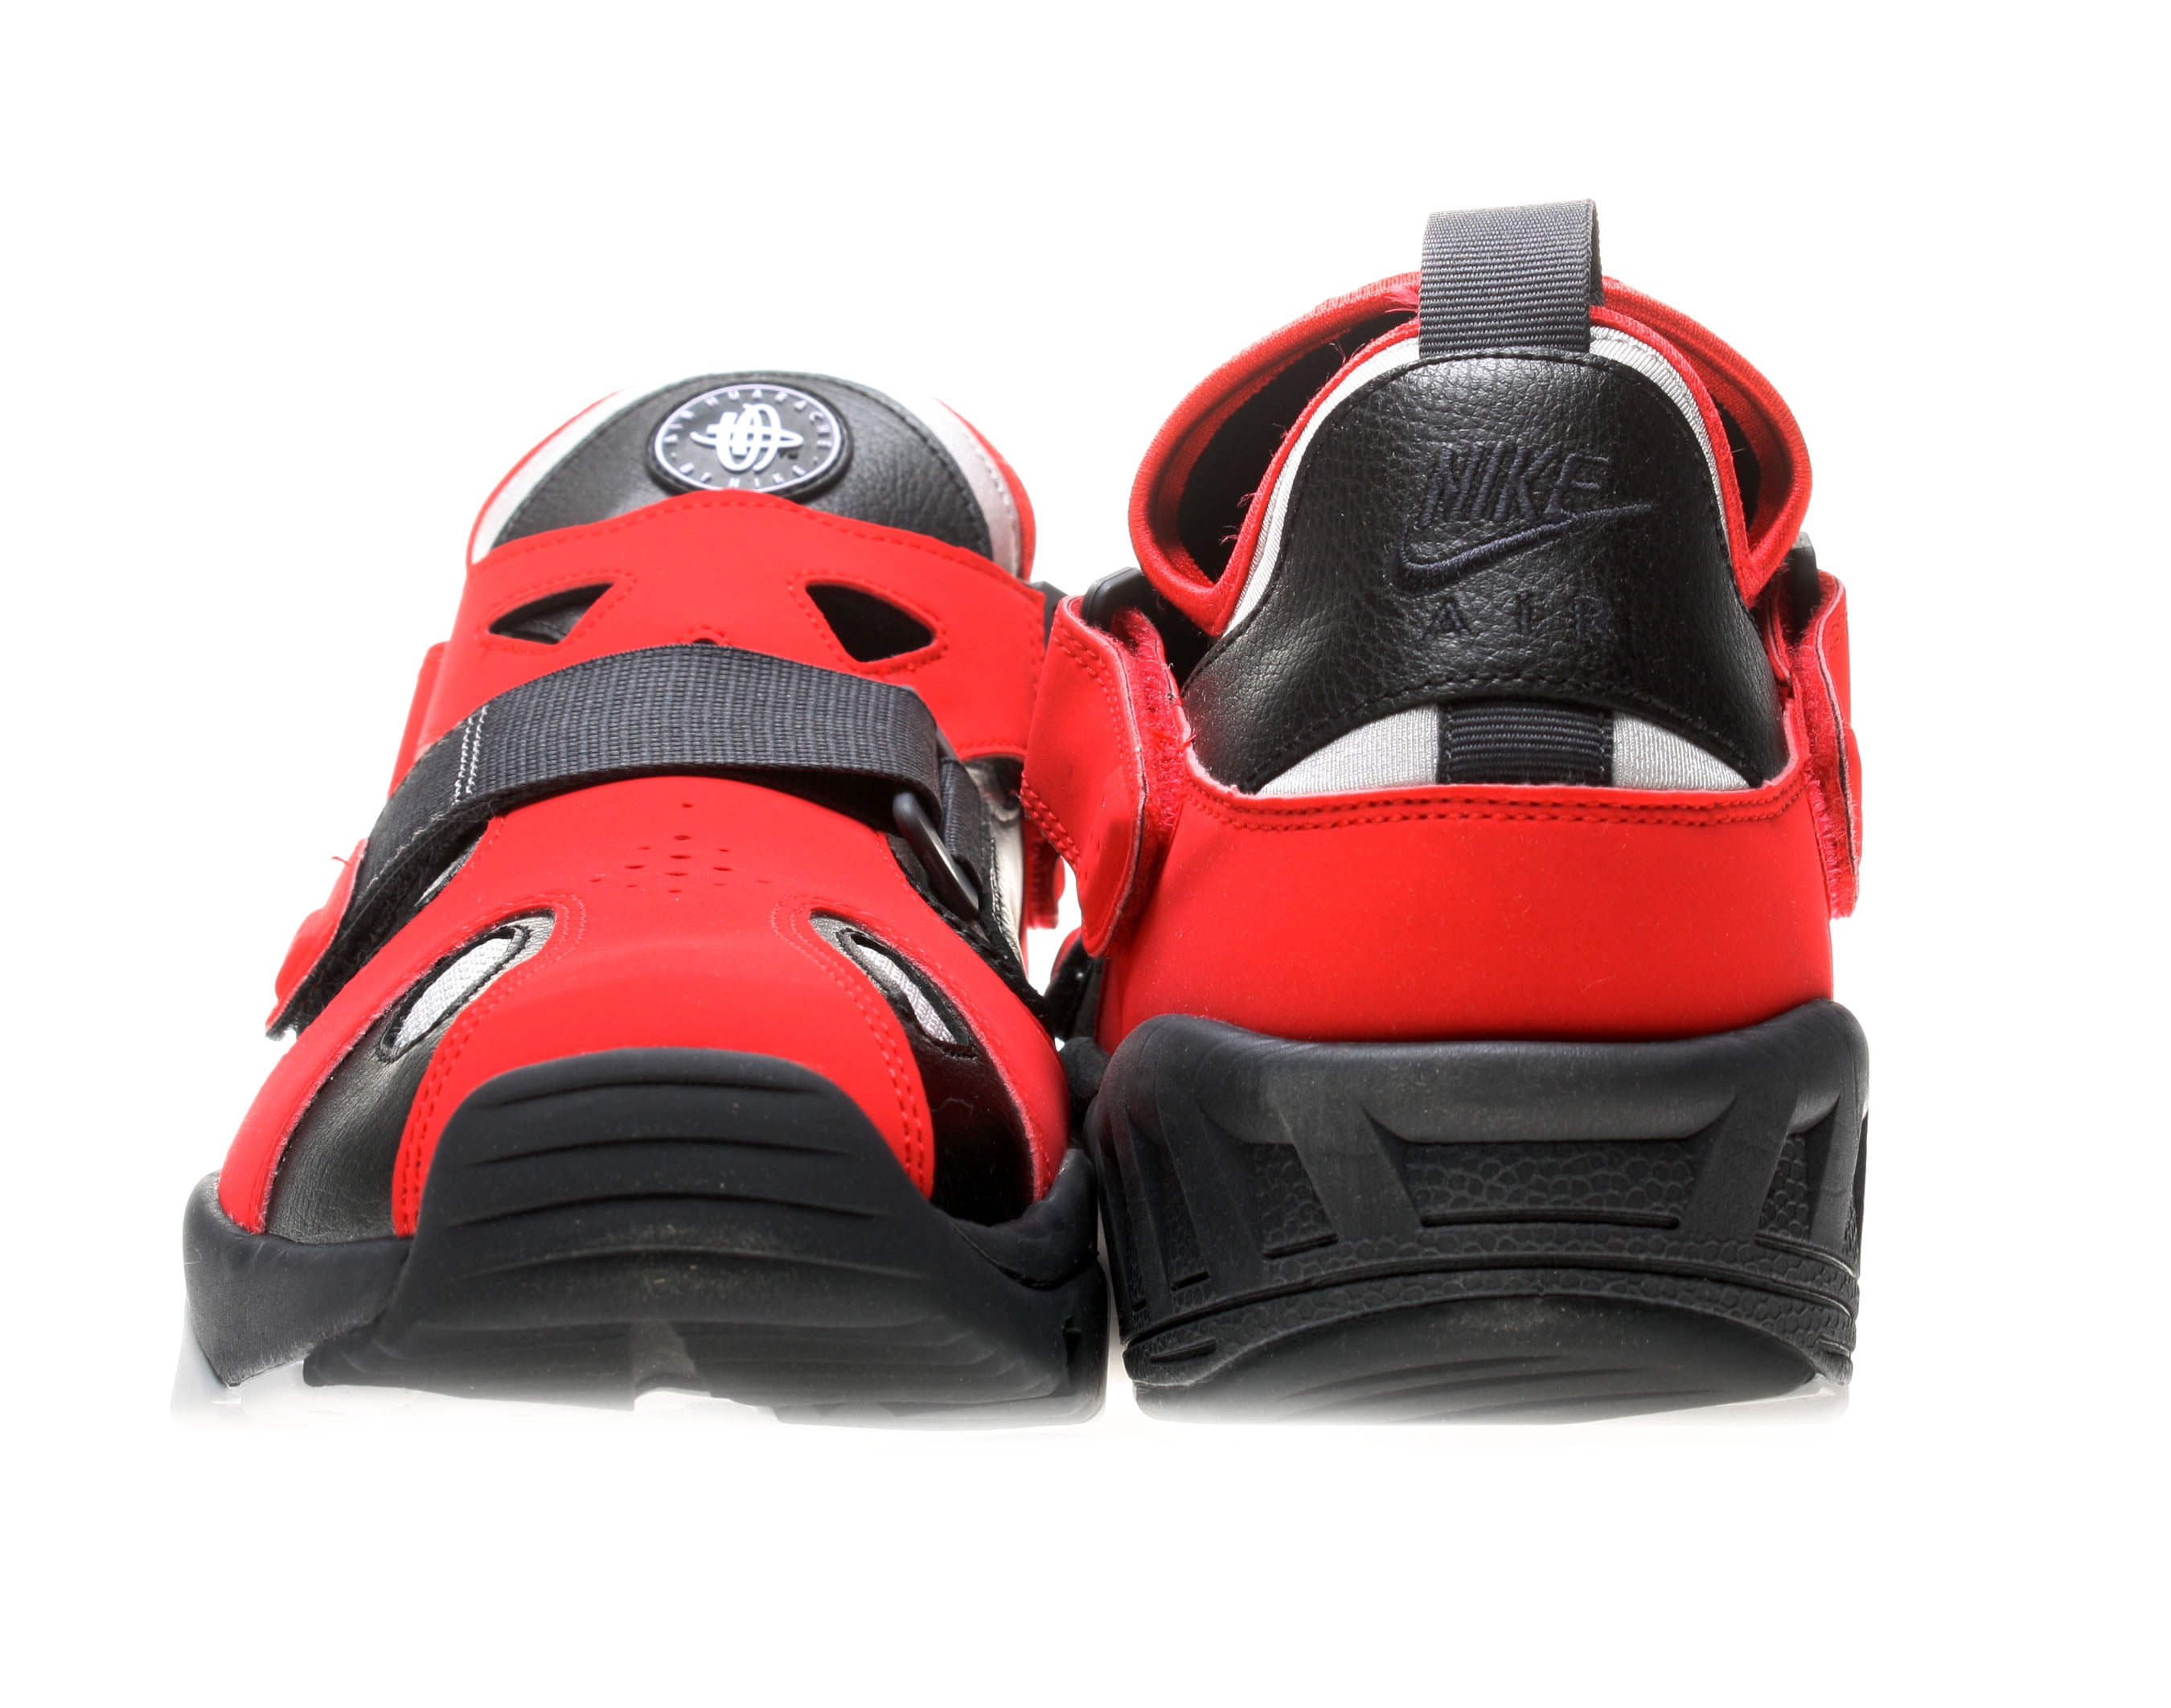 projektor Fremskreden forskel Nike Air Trainer Huarache 94 Men's Cross Training Shoes Size 11.5 -  Walmart.com